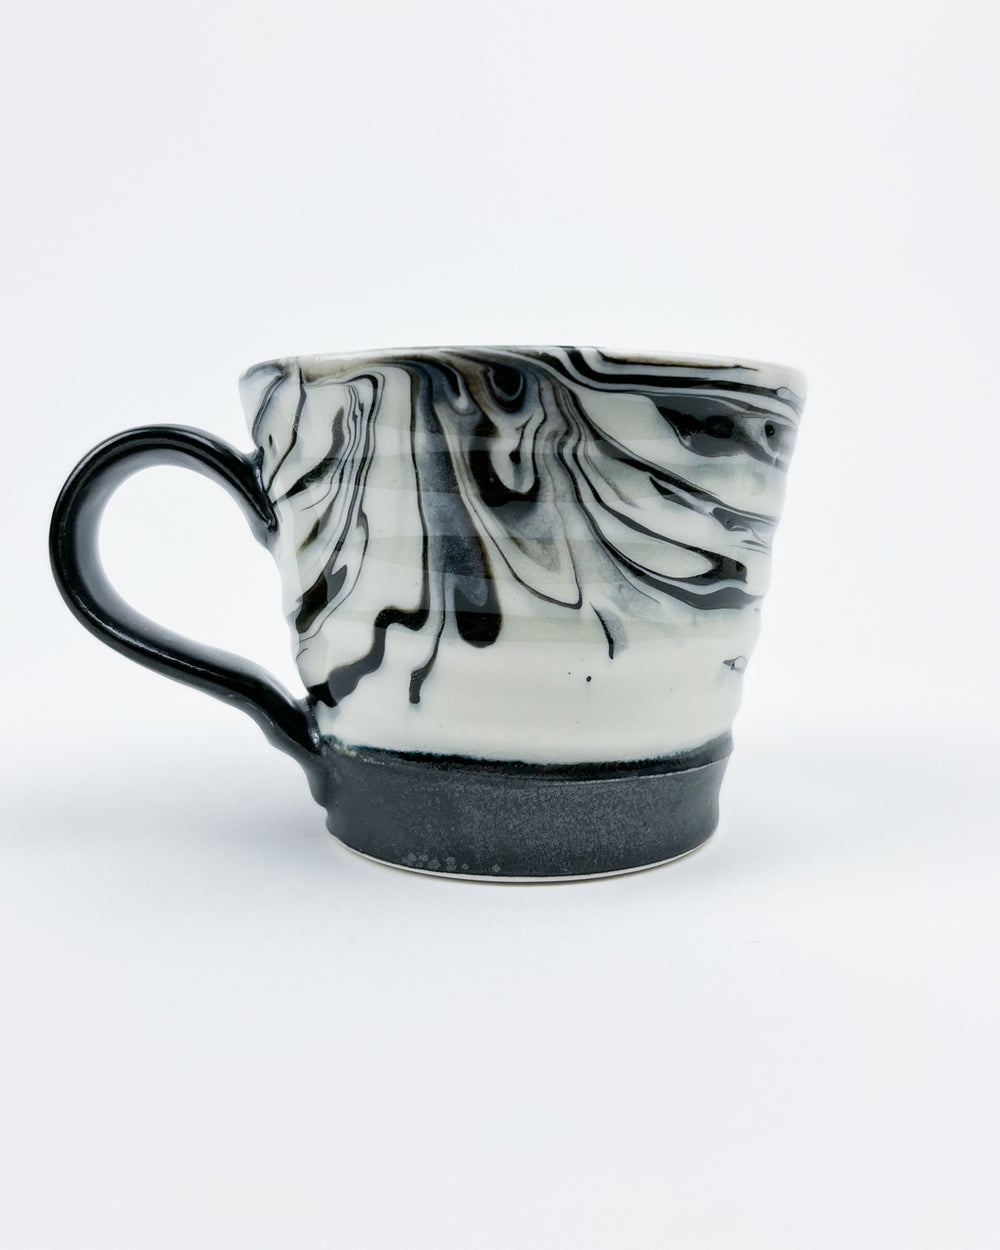 10oz Black and White Marbleware Mug